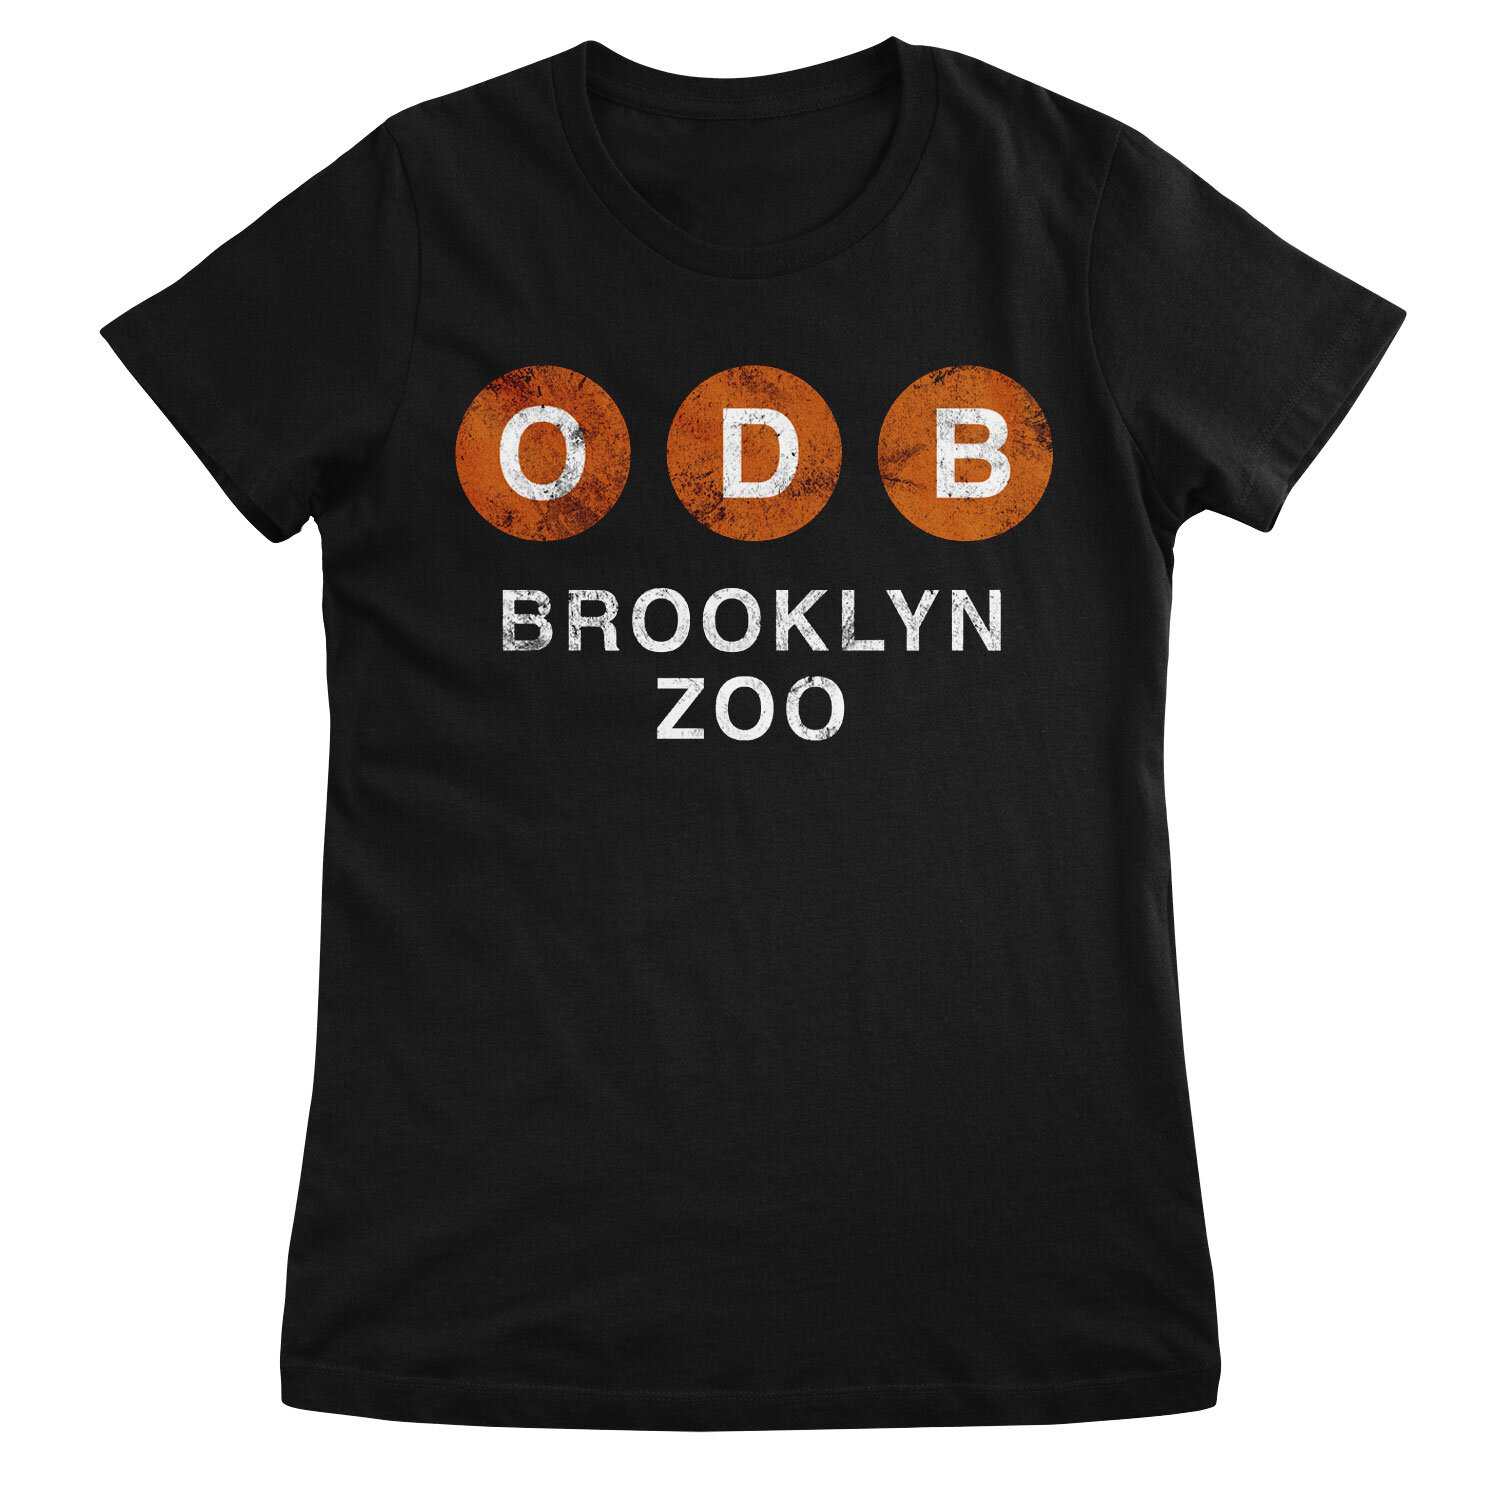 Ol' Dirty Bastard Brooklyn Zoo Girly Tee